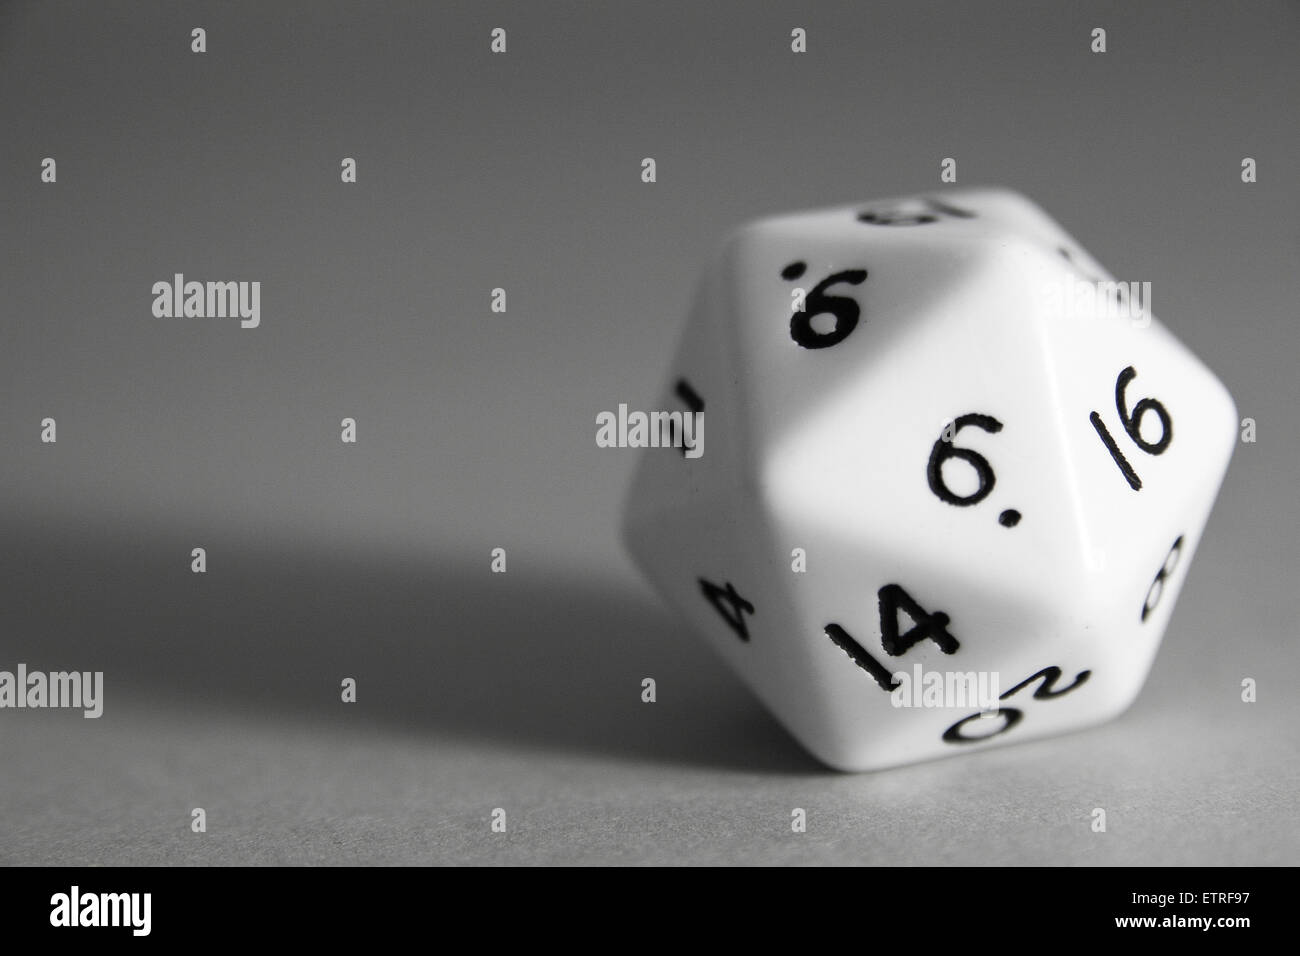 White marble Icosahedron dice on grey background Stock Photo